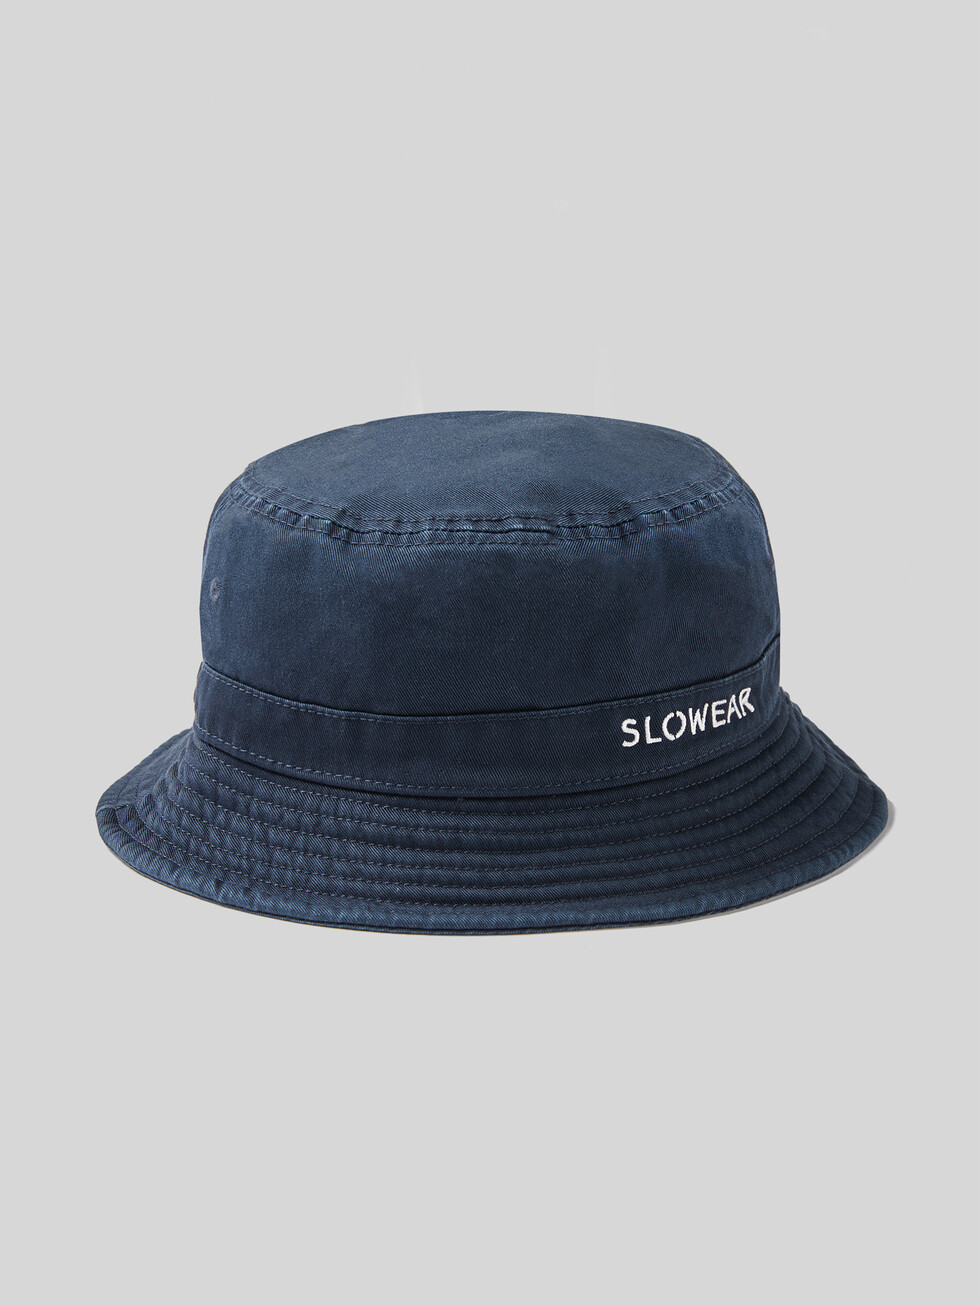 Cotton bucket hat , Slowear | Slowear